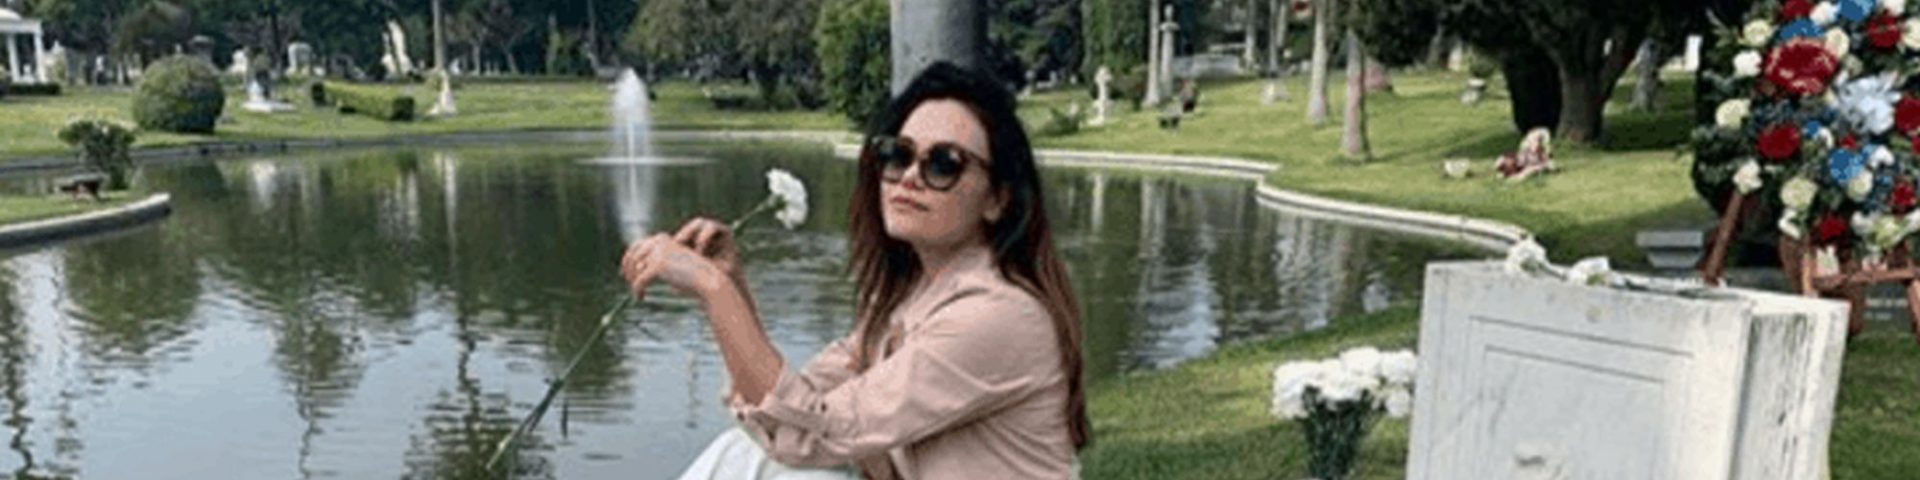 Romina Carrisi Jr: critiche per la foto seduta sulla tomba di nonno Tyron Power